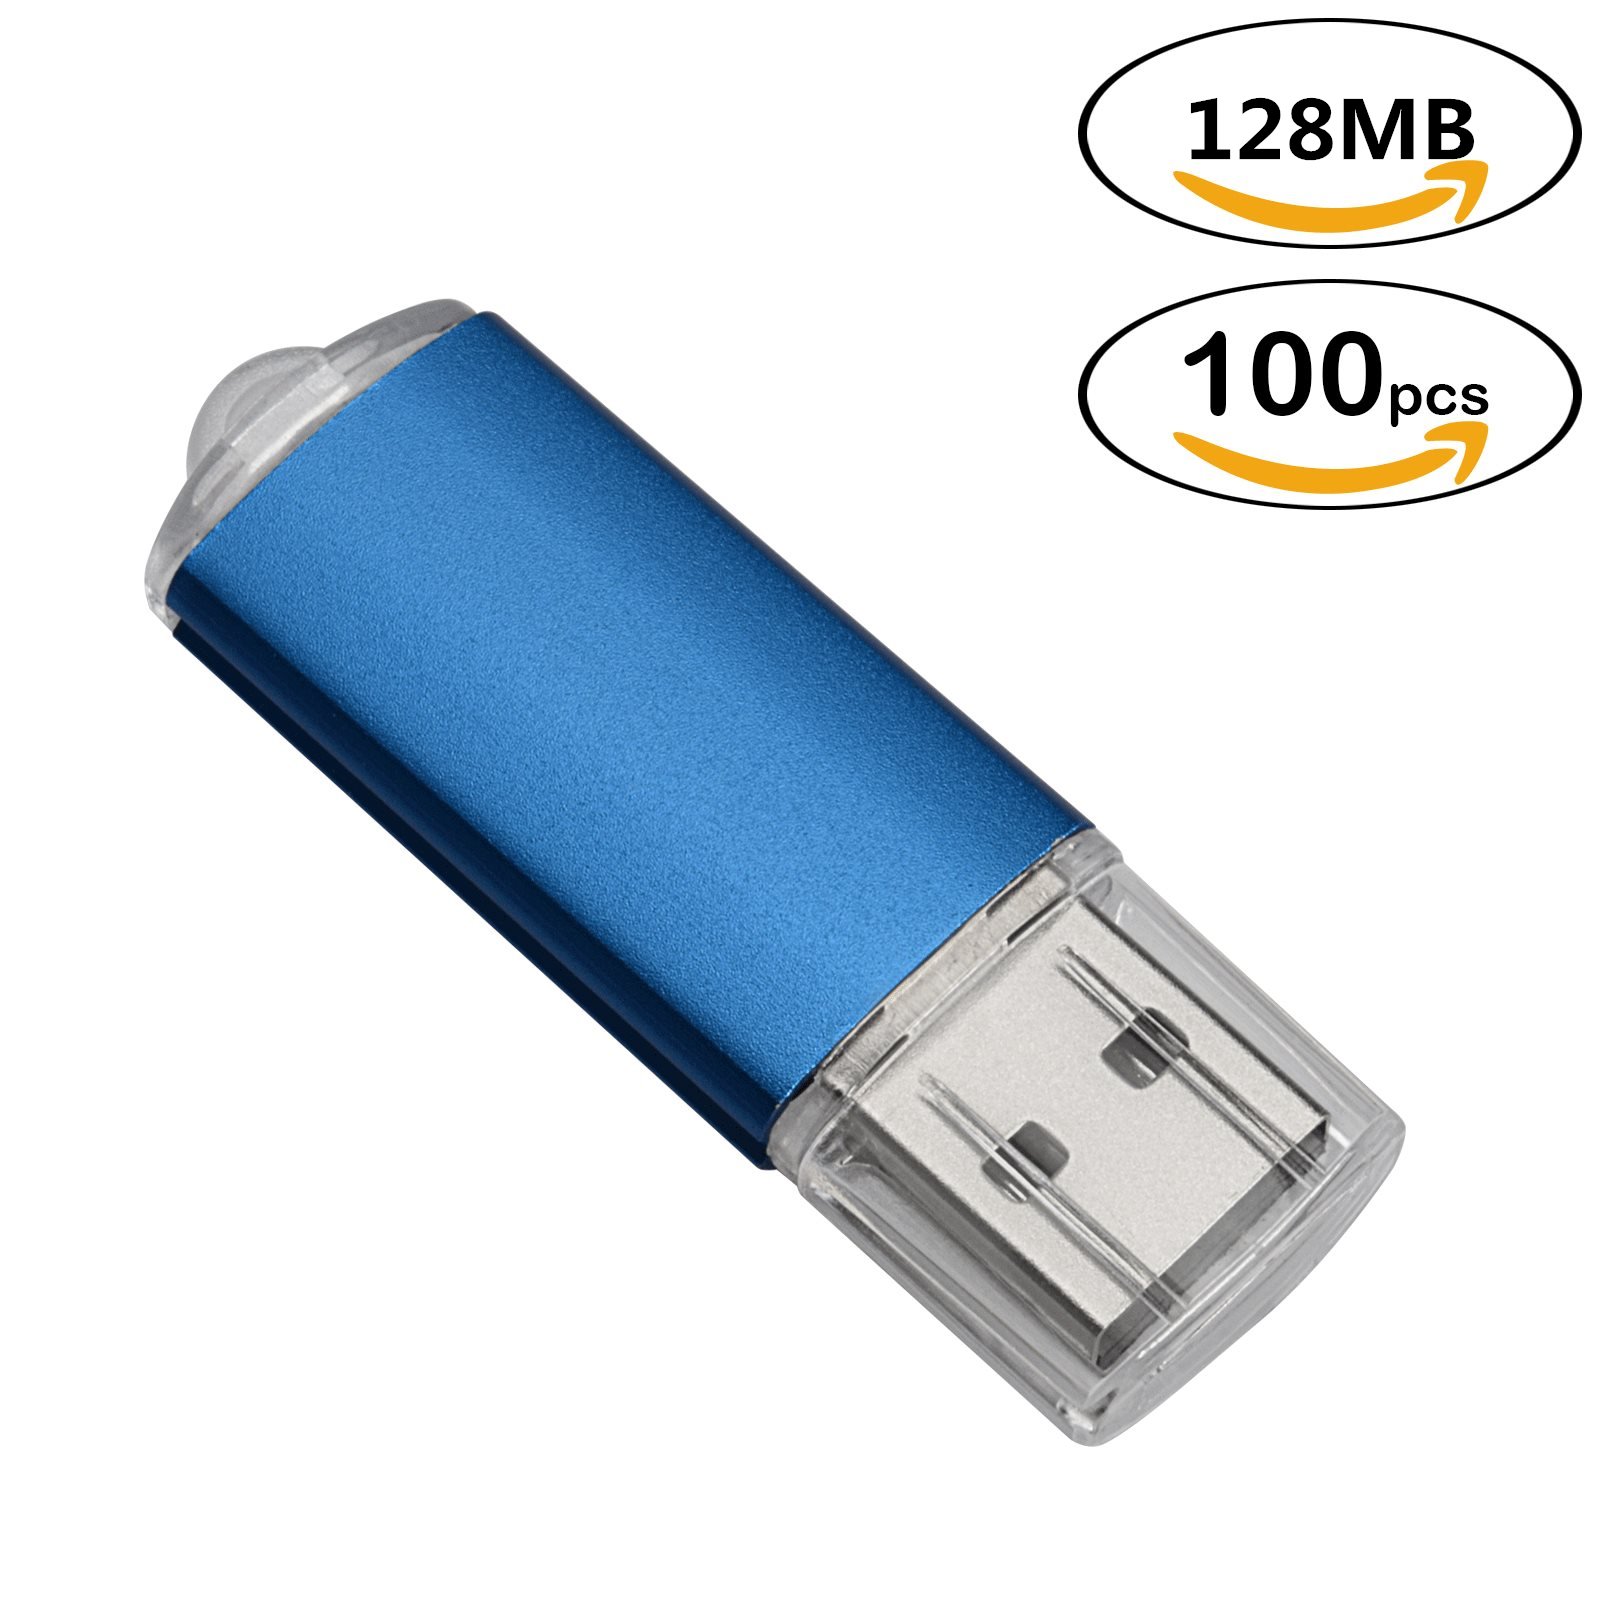 RECTALLO 100pc all'ingrosso Rettangole USB Flash Drive 128MB Flash Pen Drive Memory Stick Memory Stick per computer Tablet 8 Colori.